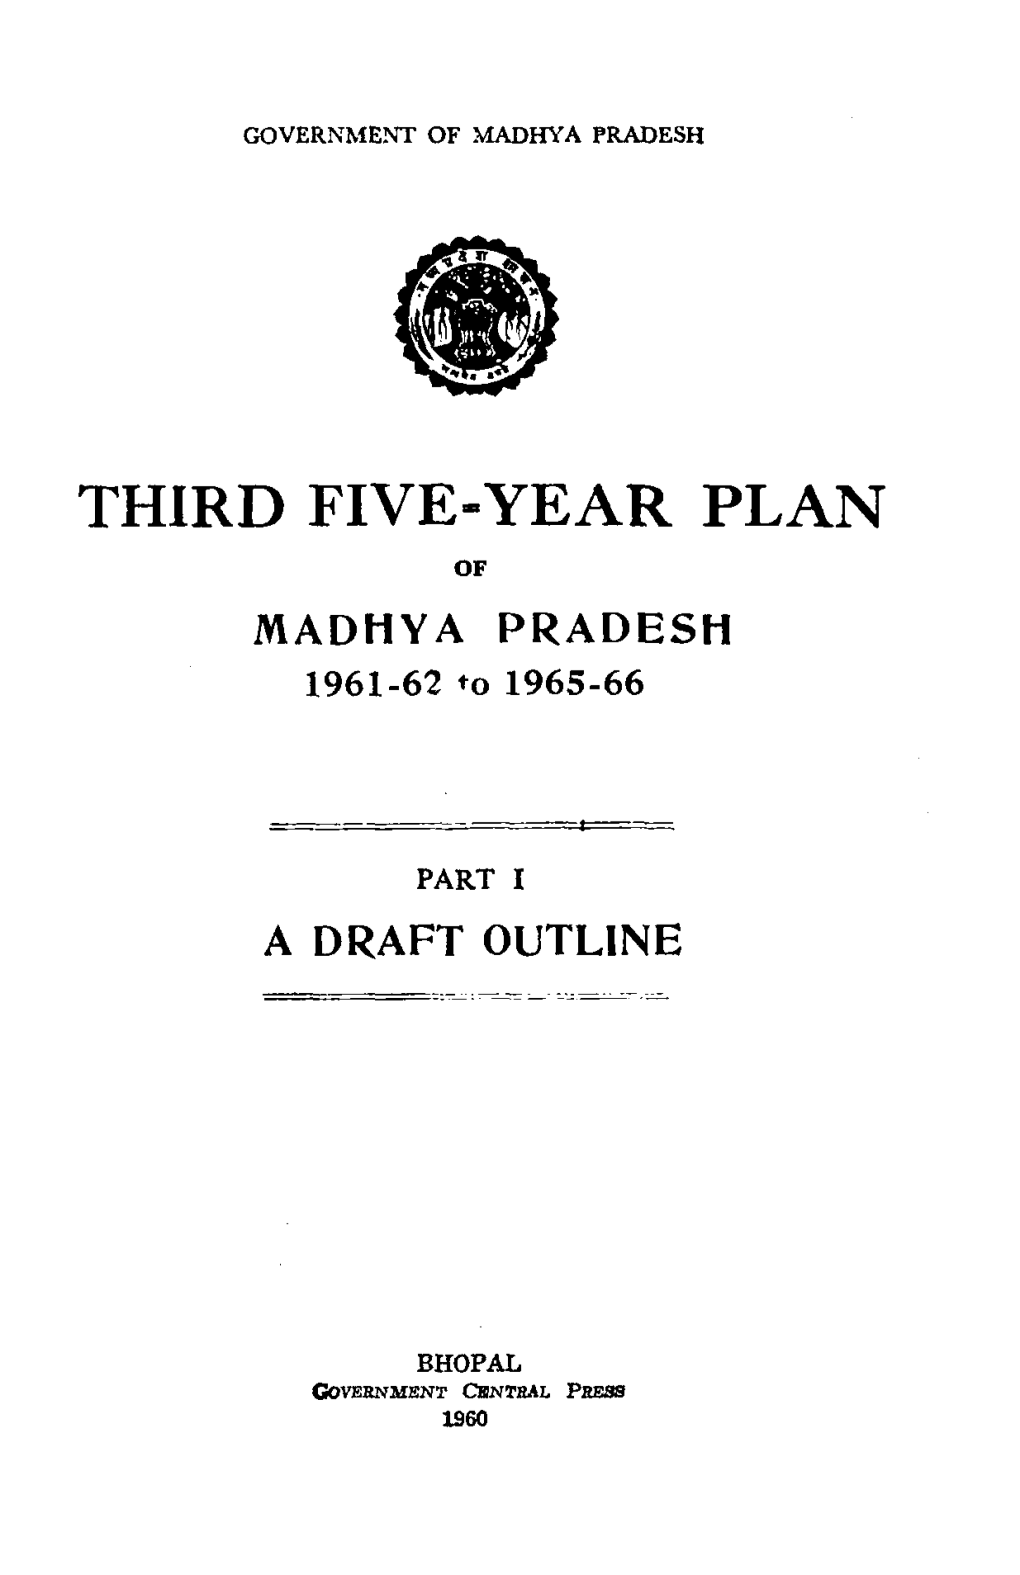 Third Five Year Plan of Madhya Pradesh 1961-62 To